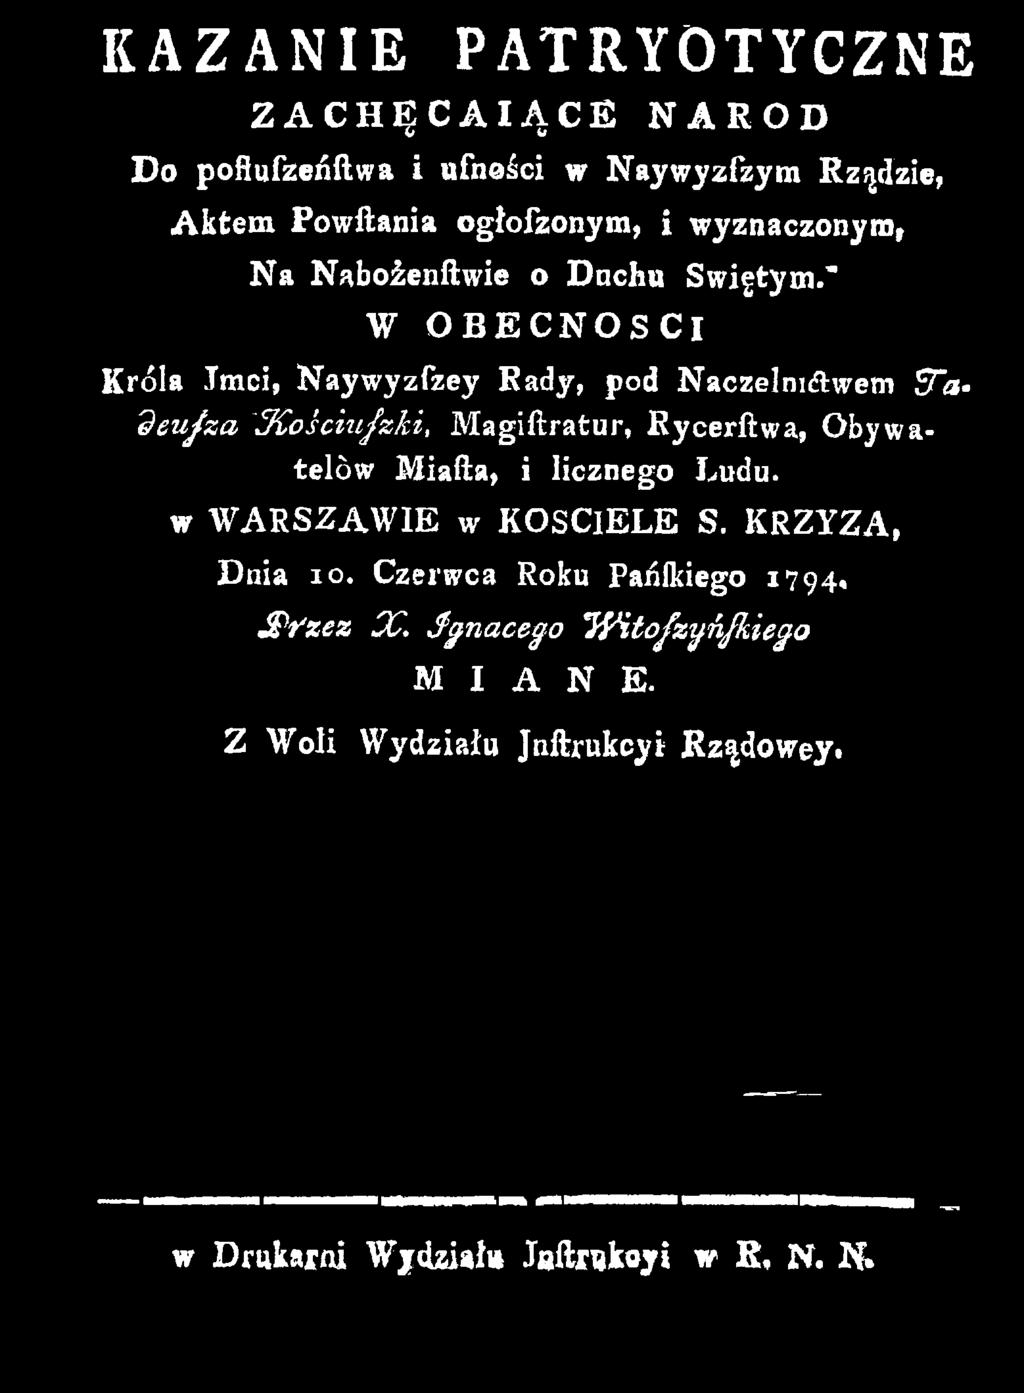 KRZYZA, Dnia 10. Czerwca Roku Pańlkiego 1794, JPfzez X.